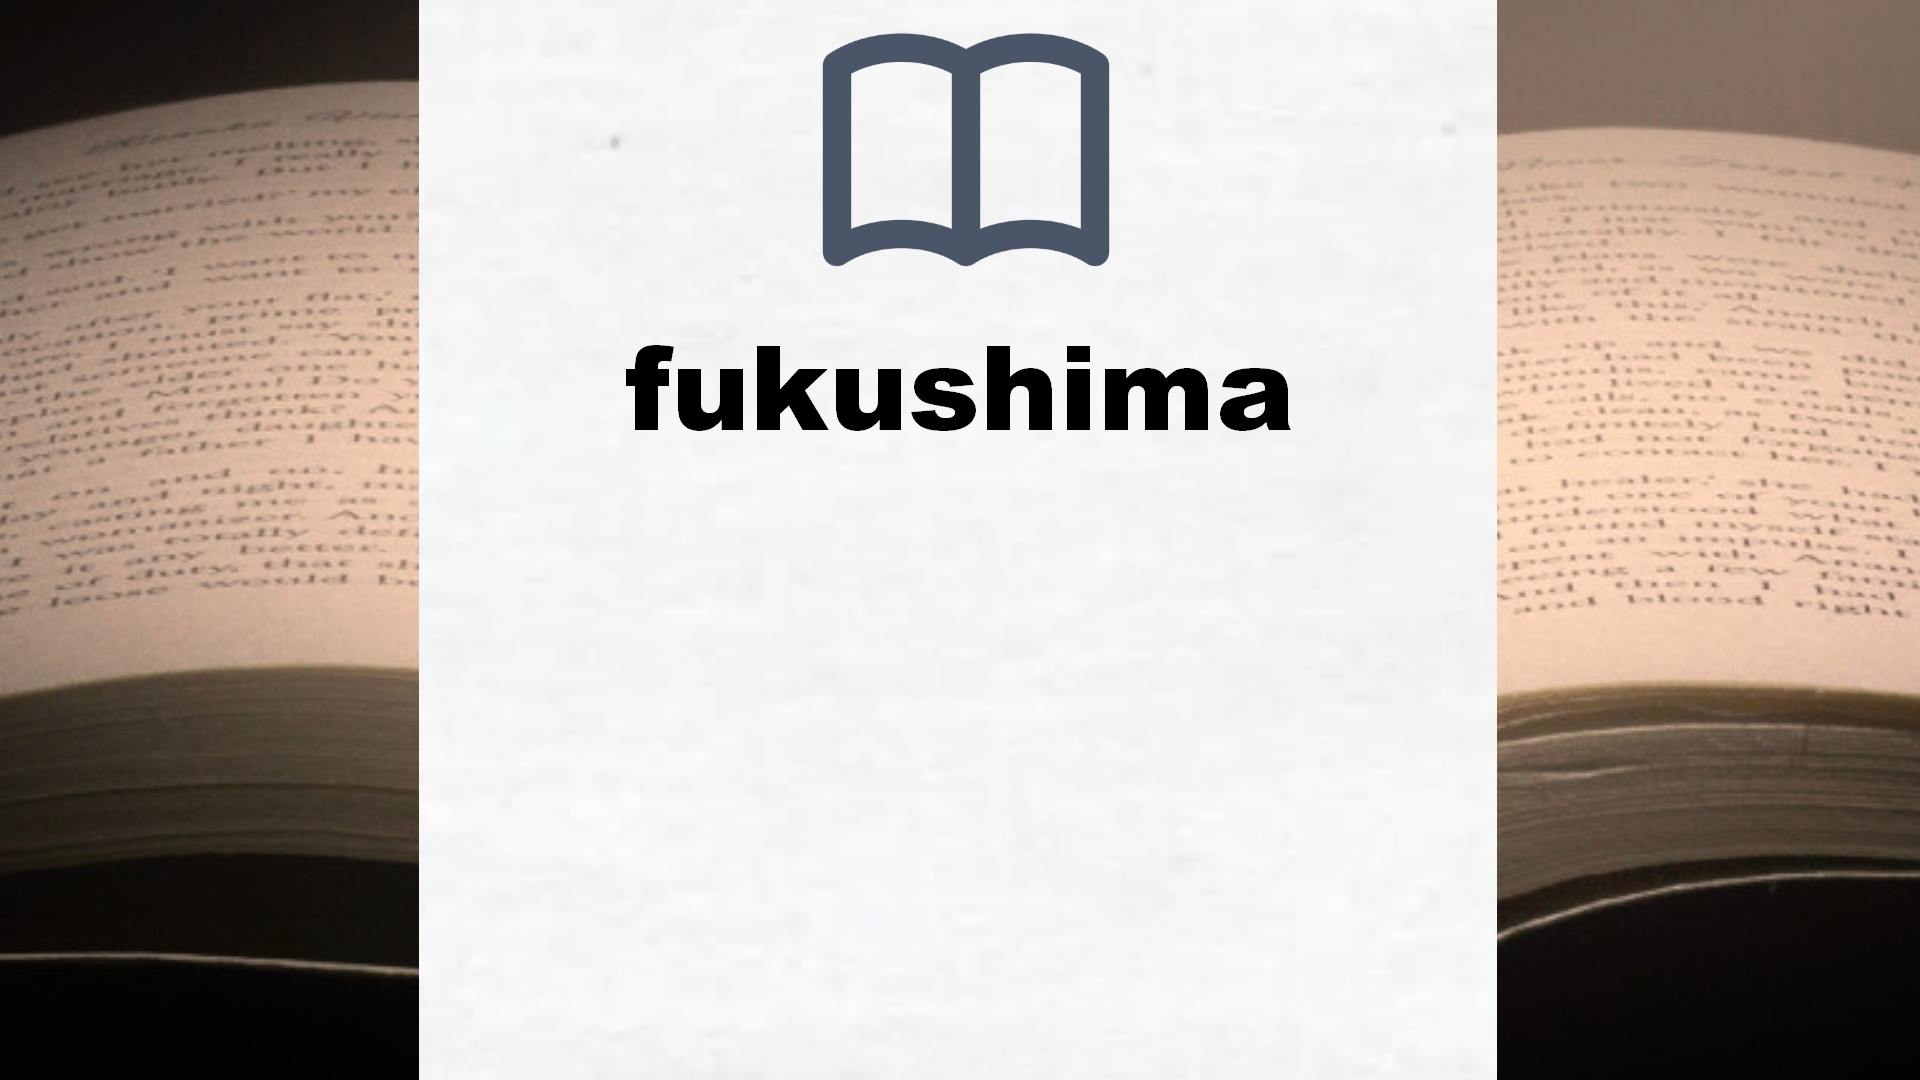 Libros sobre fukushima